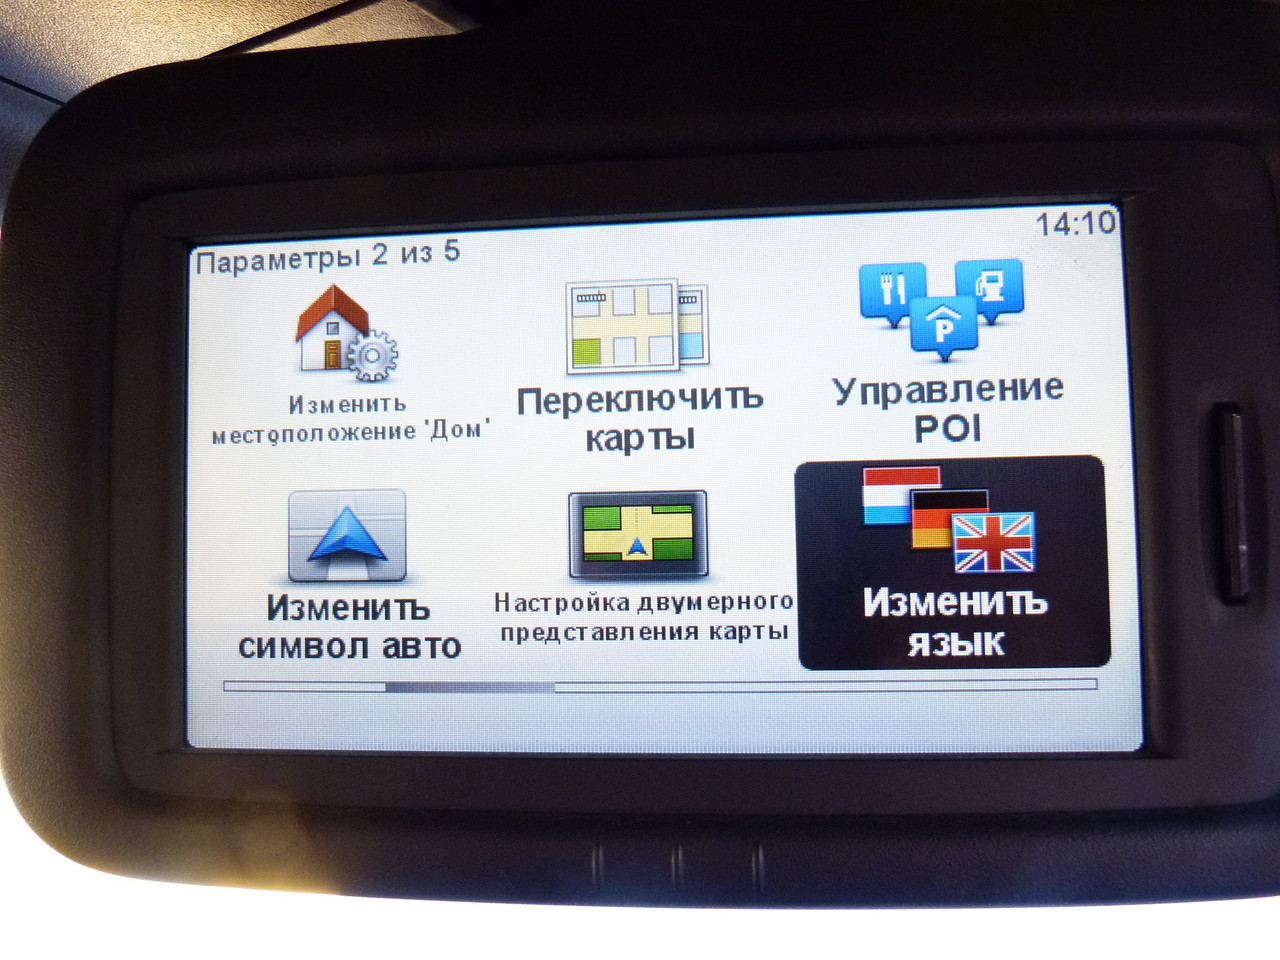 Renault Master 3 GPS Навигатор Заводская Комплектация Tom Tom LIVE с SD  Картой Европы — в Категории "GPS-навигаторы" на Bigl.ua (1249381016)